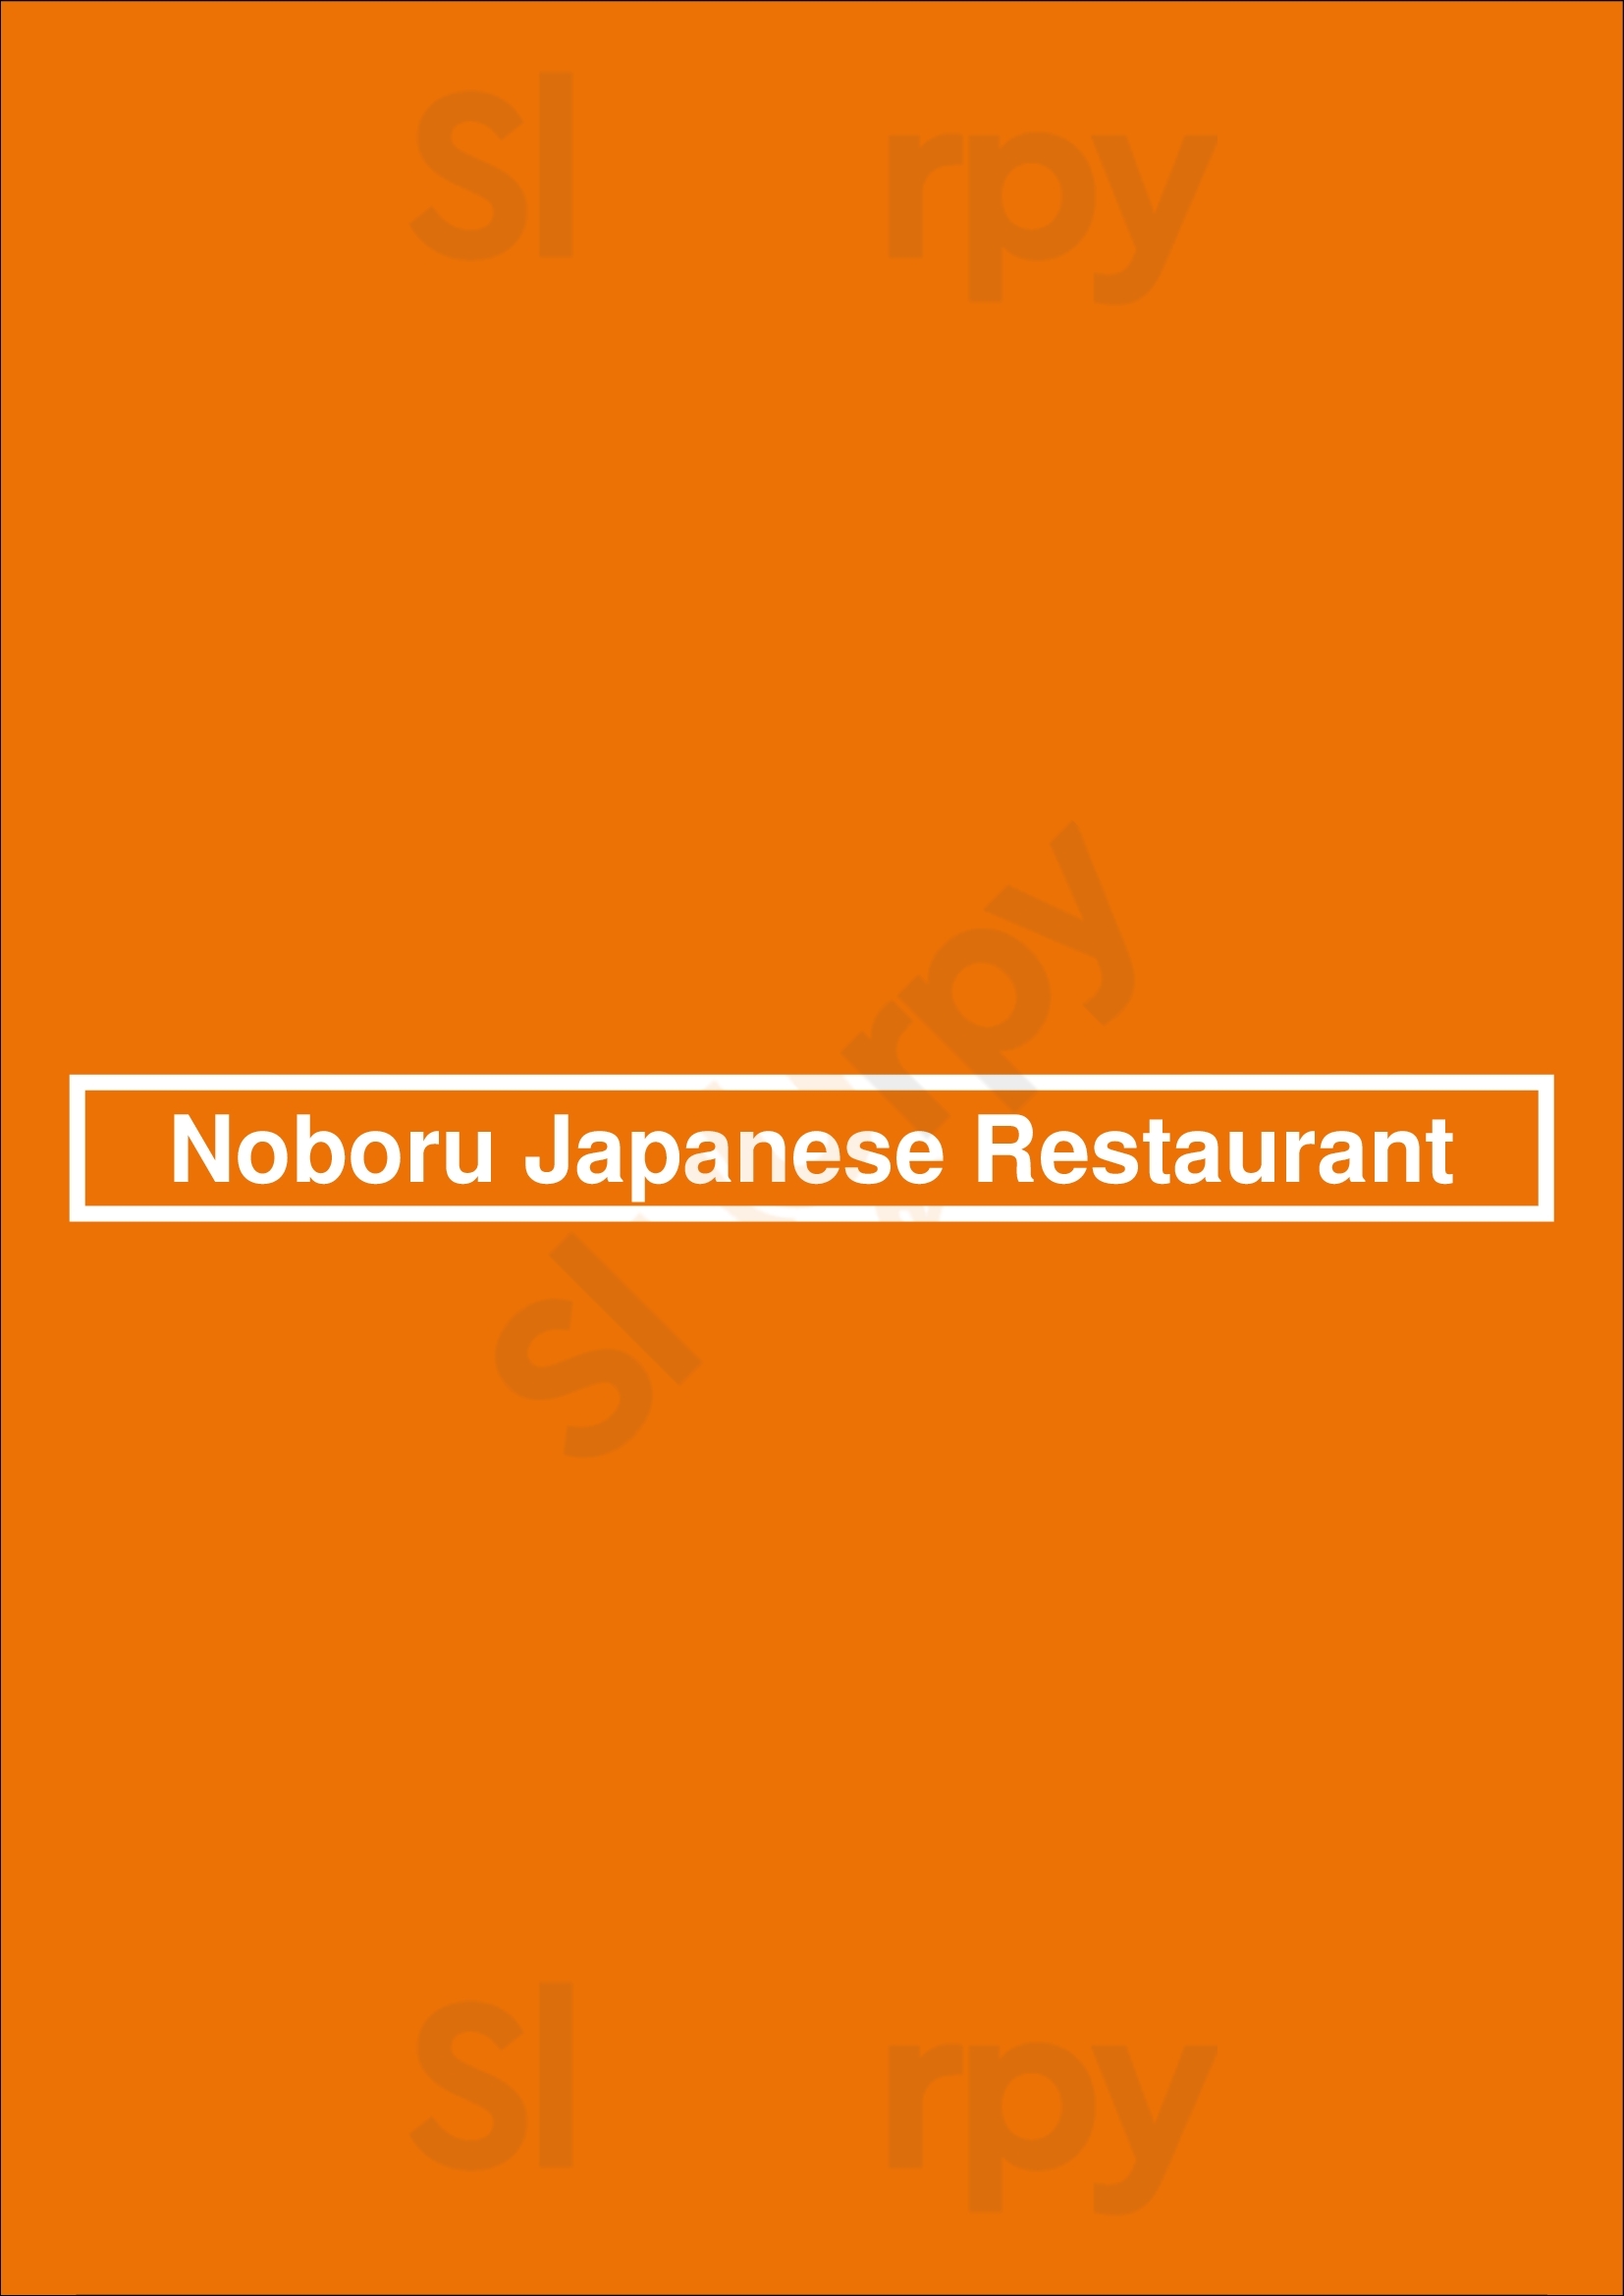 Noboru Japanese Restaurant Kailua Menu - 1